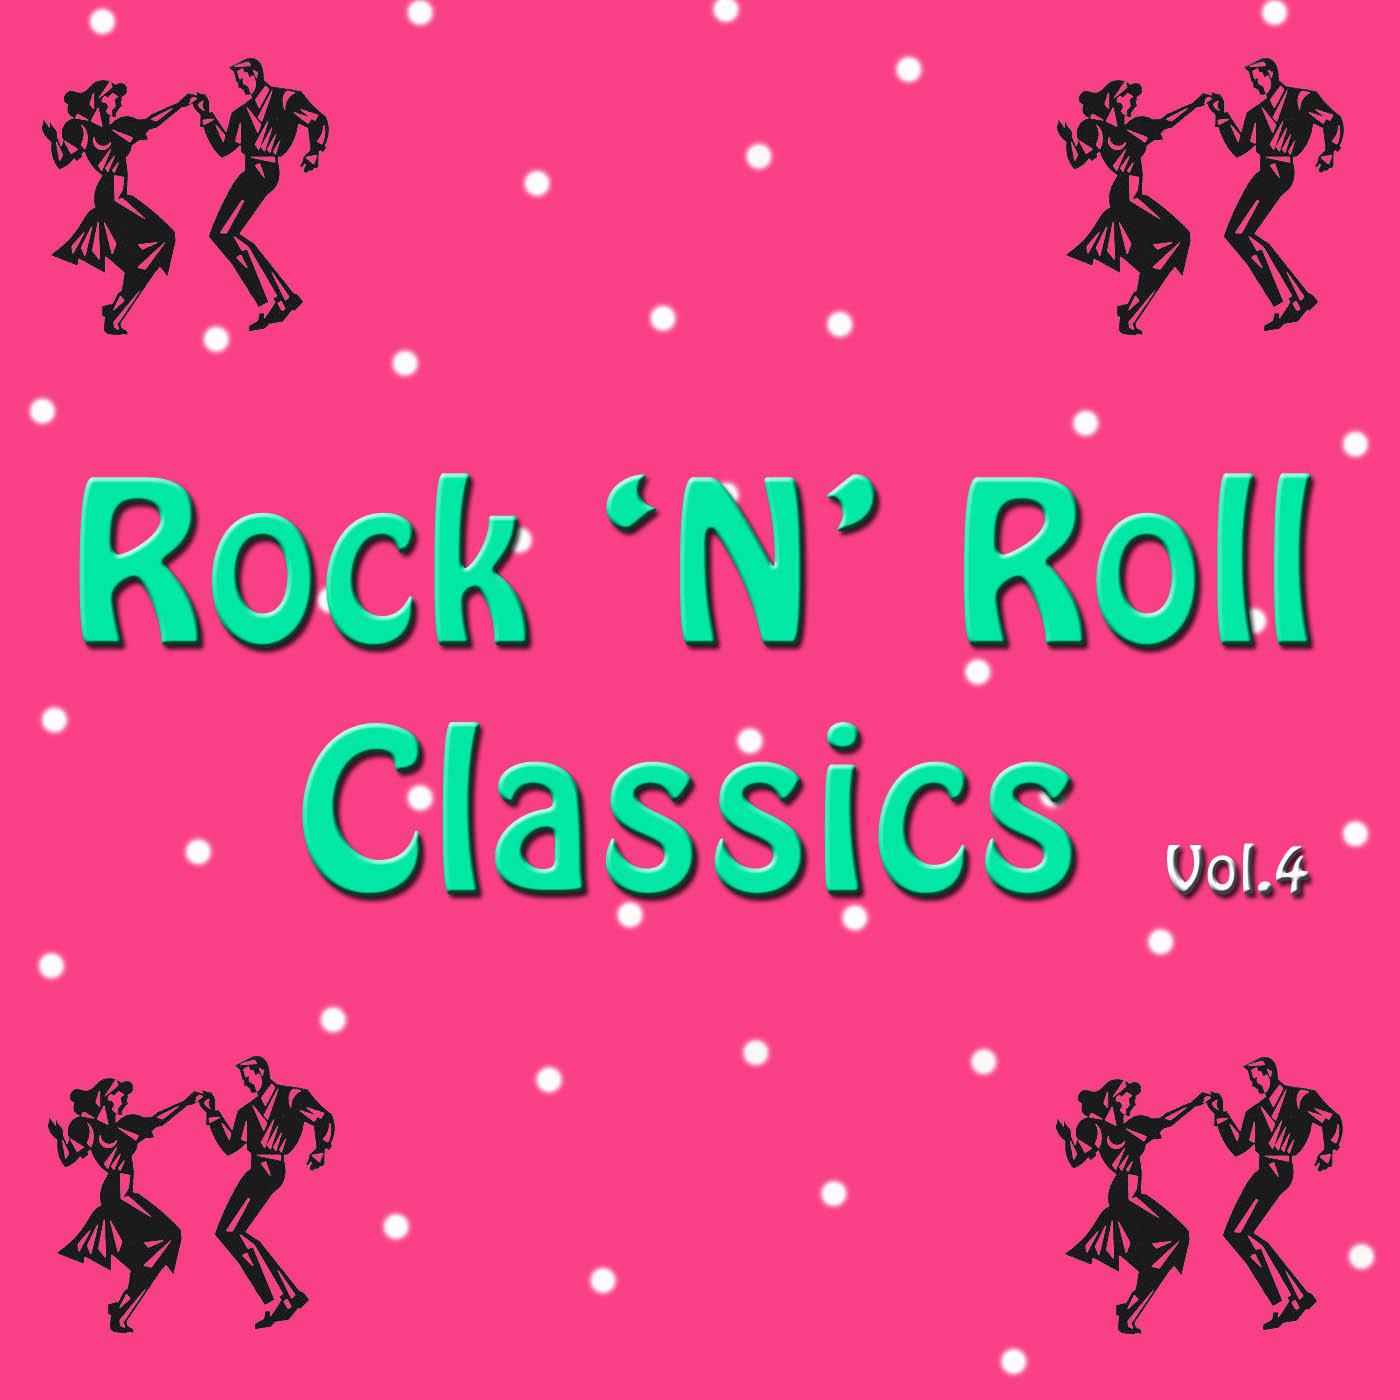 Rock 'n' Roll Classics, Vol. 4